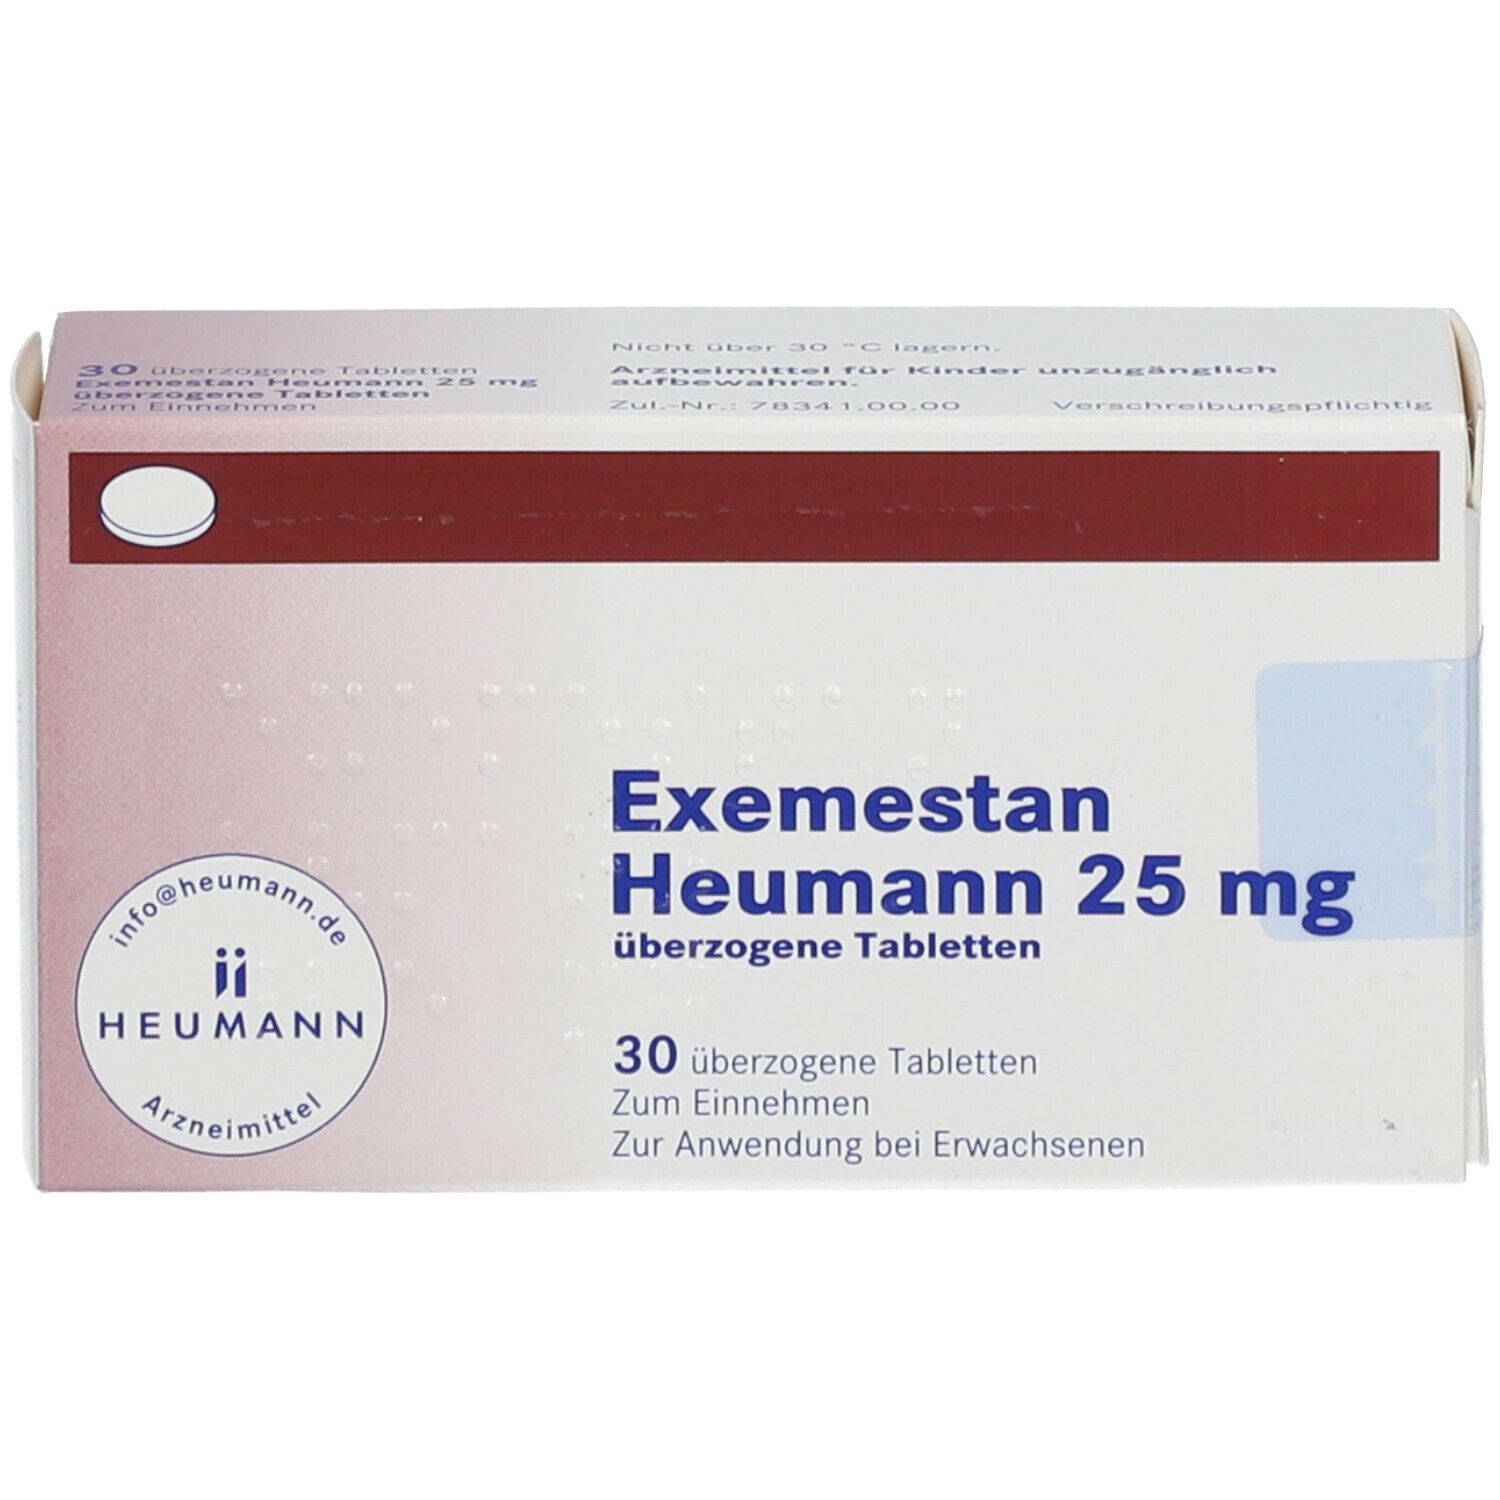 Exemestan Heumann 25 mg